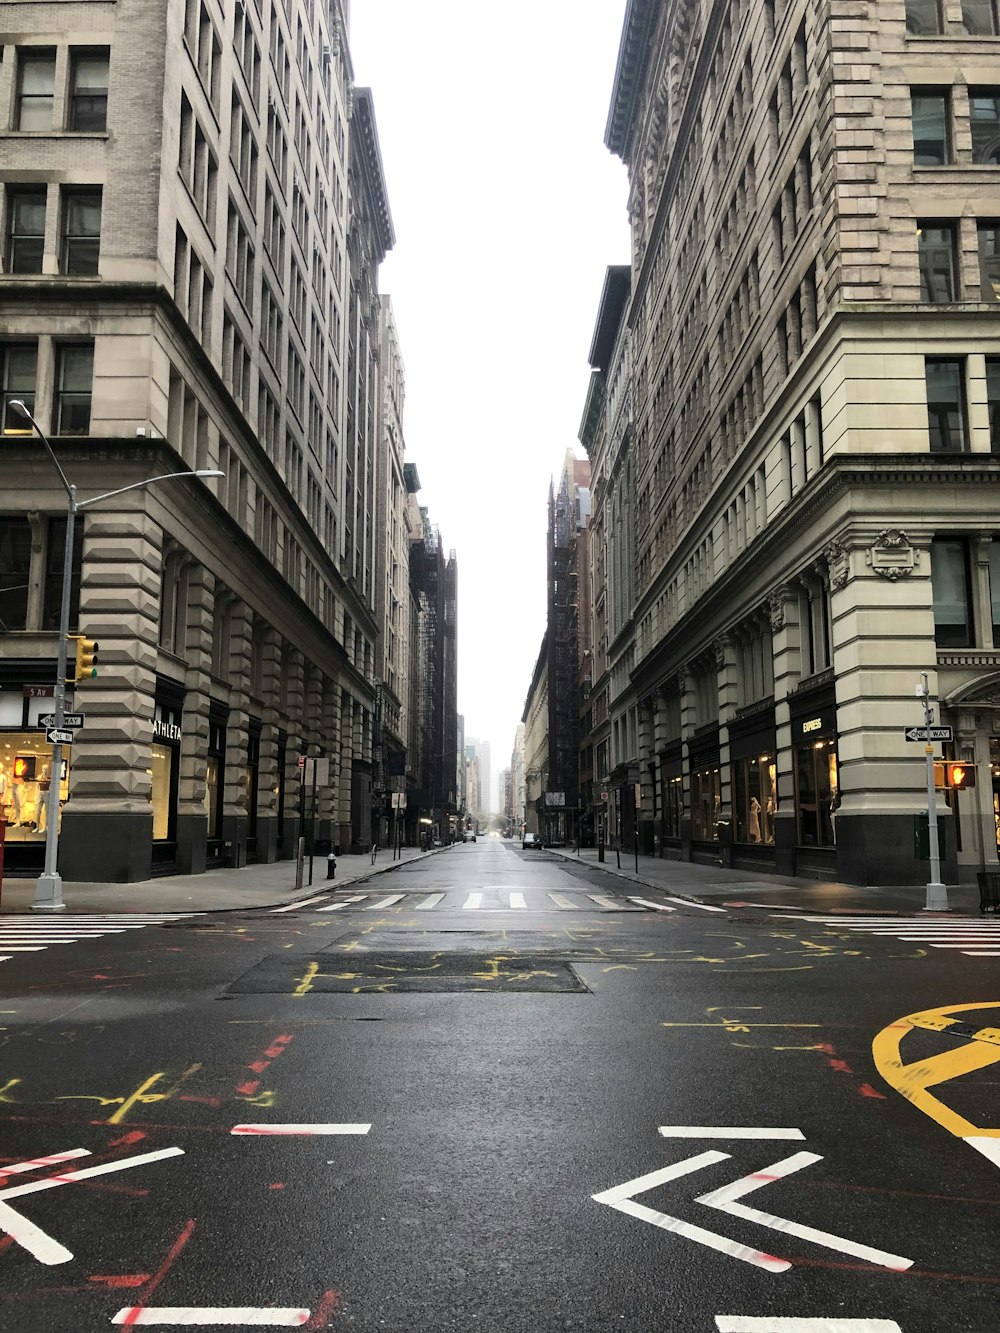 schwarz-gelbe Fußgängerzone zwischen Hochhäusern tagsüber